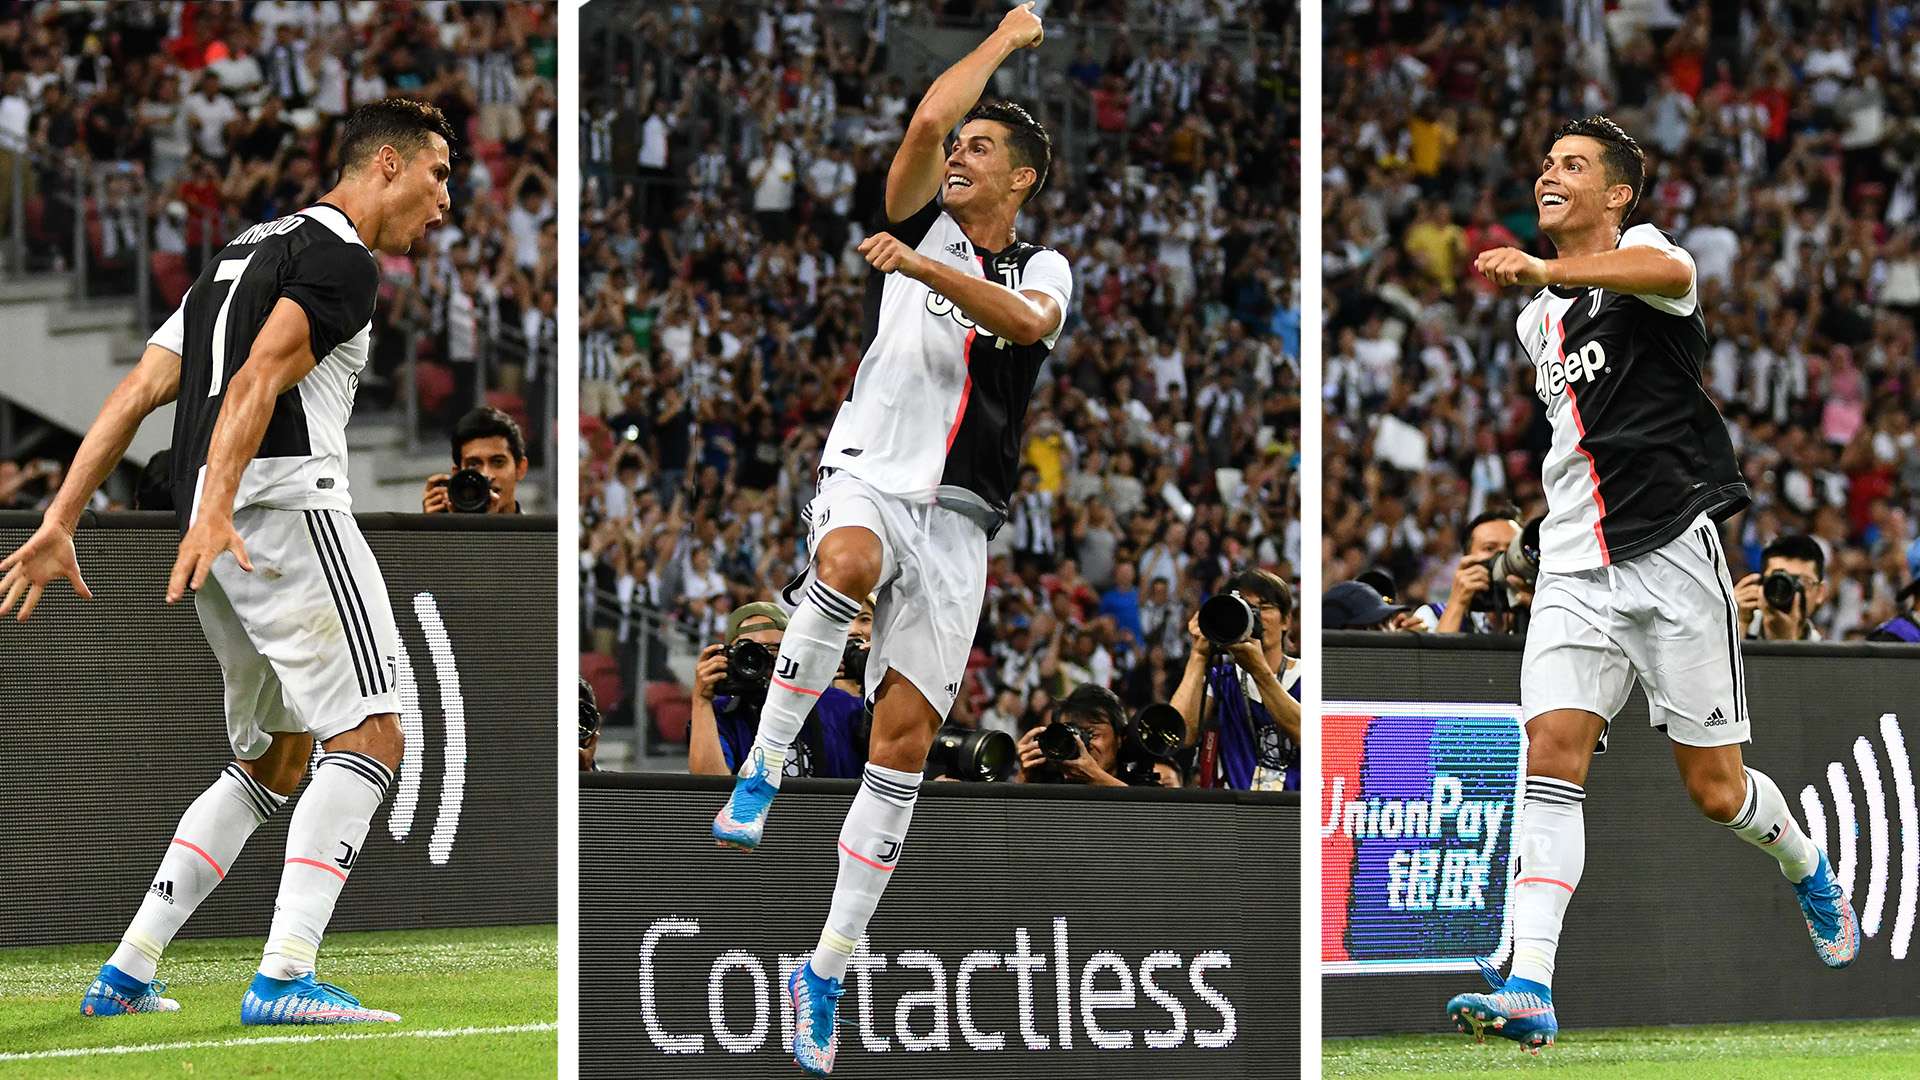 Les 4 prochains défis de Cristiano Ronaldo à la Juve (Corriere dello Sport)